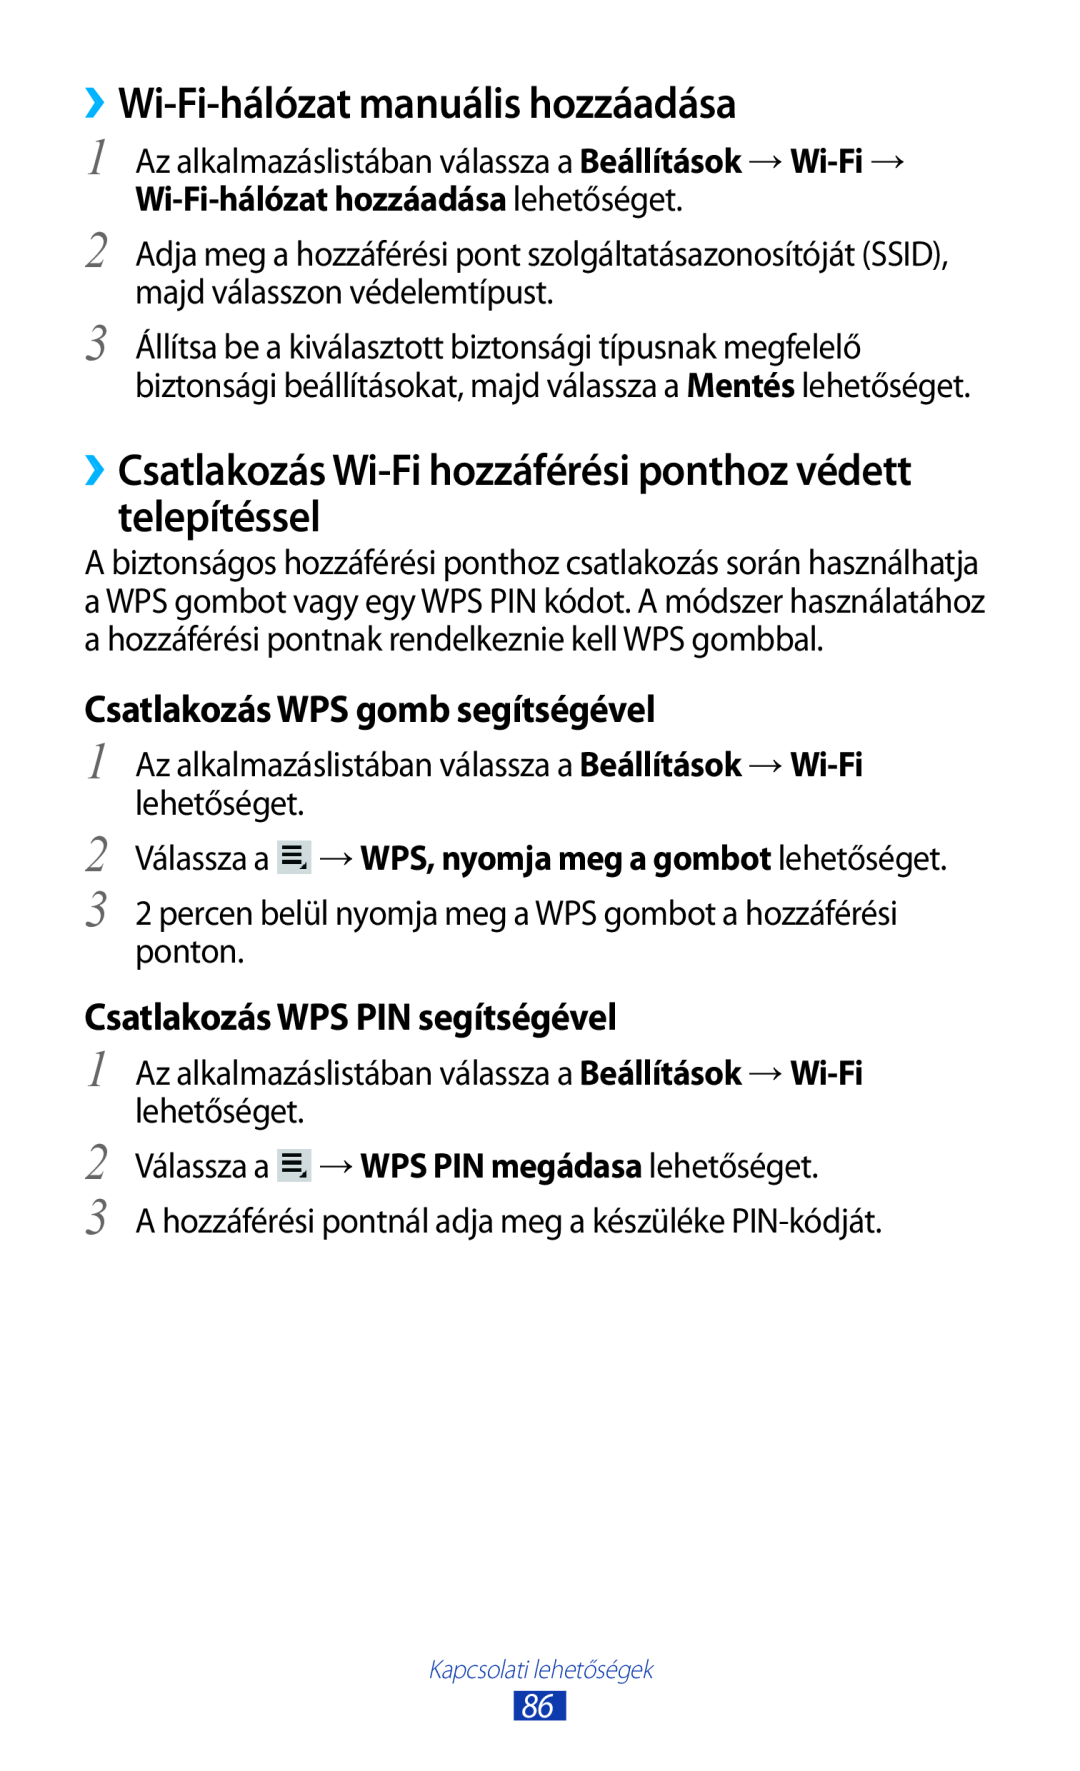 Samsung GT-P3110ZWAATO ››Wi-Fi-hálózat manuális hozzáadása, ››Csatlakozás Wi-Fi hozzáférési ponthoz védett telepítéssel 